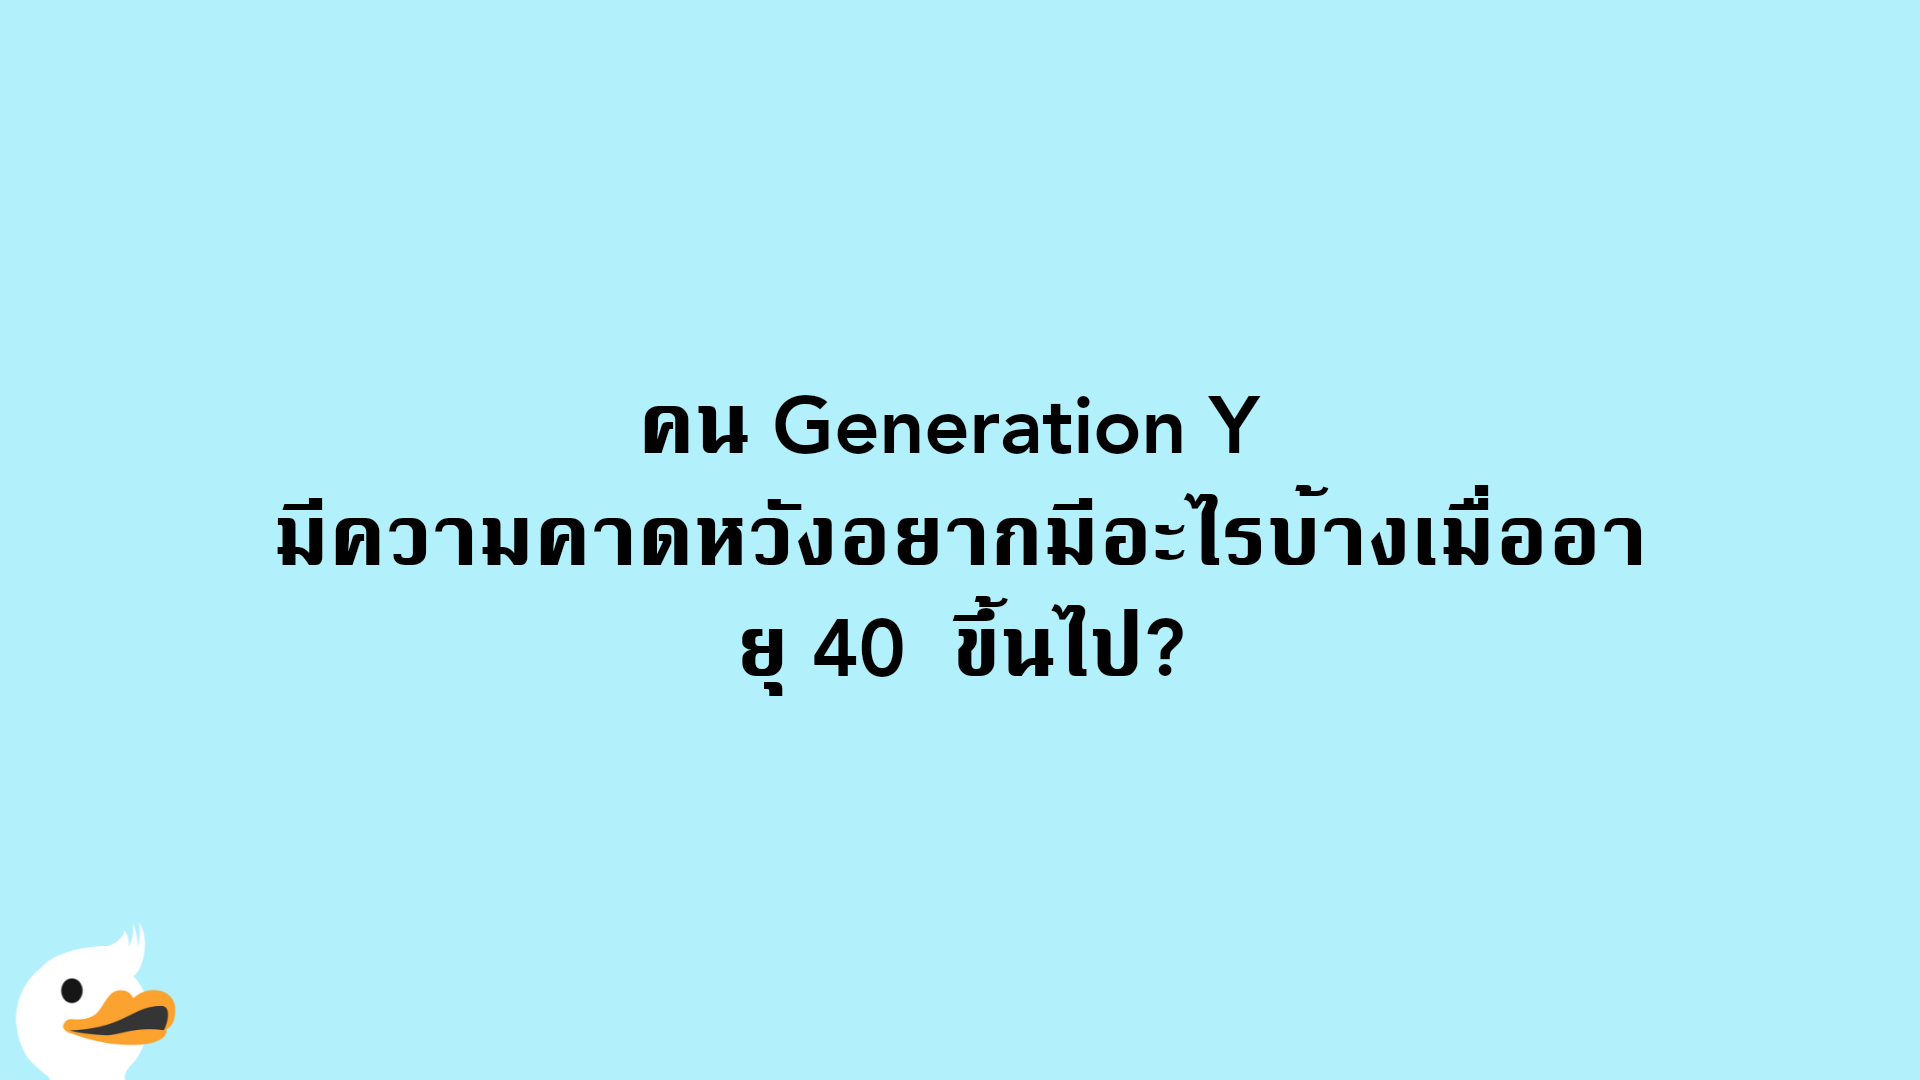 คน Generation Y  มีความคาดหวังอยากมีอะไรบ้างเมื่ออายุ 40  ขึ้นไป?